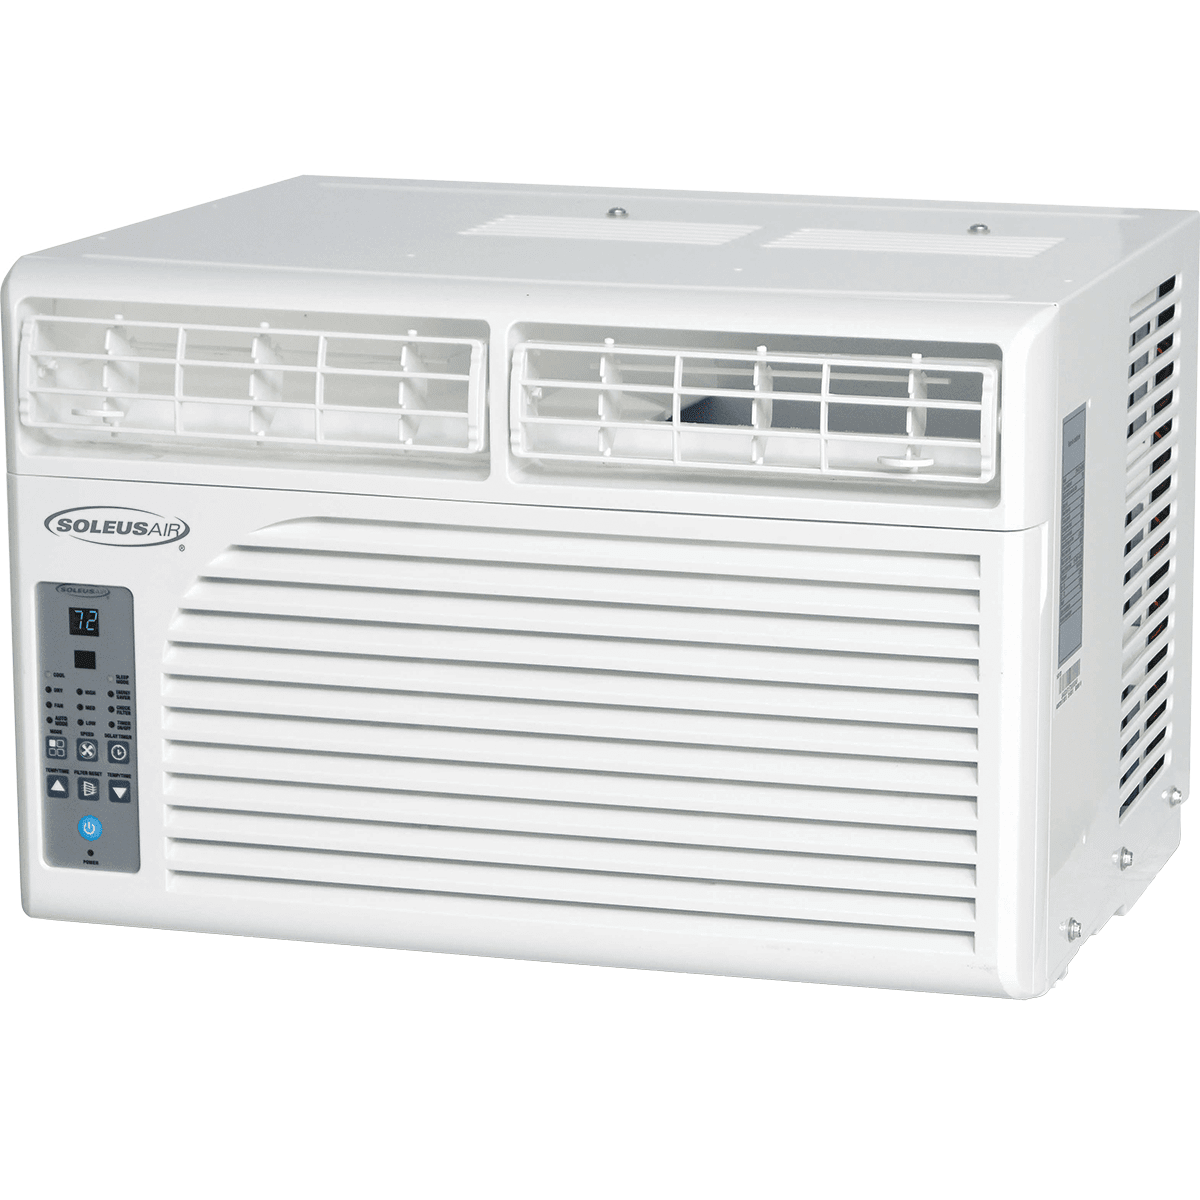 Soleus Air 6,400 Btu Window Air Conditioner (ws1-06e-01)